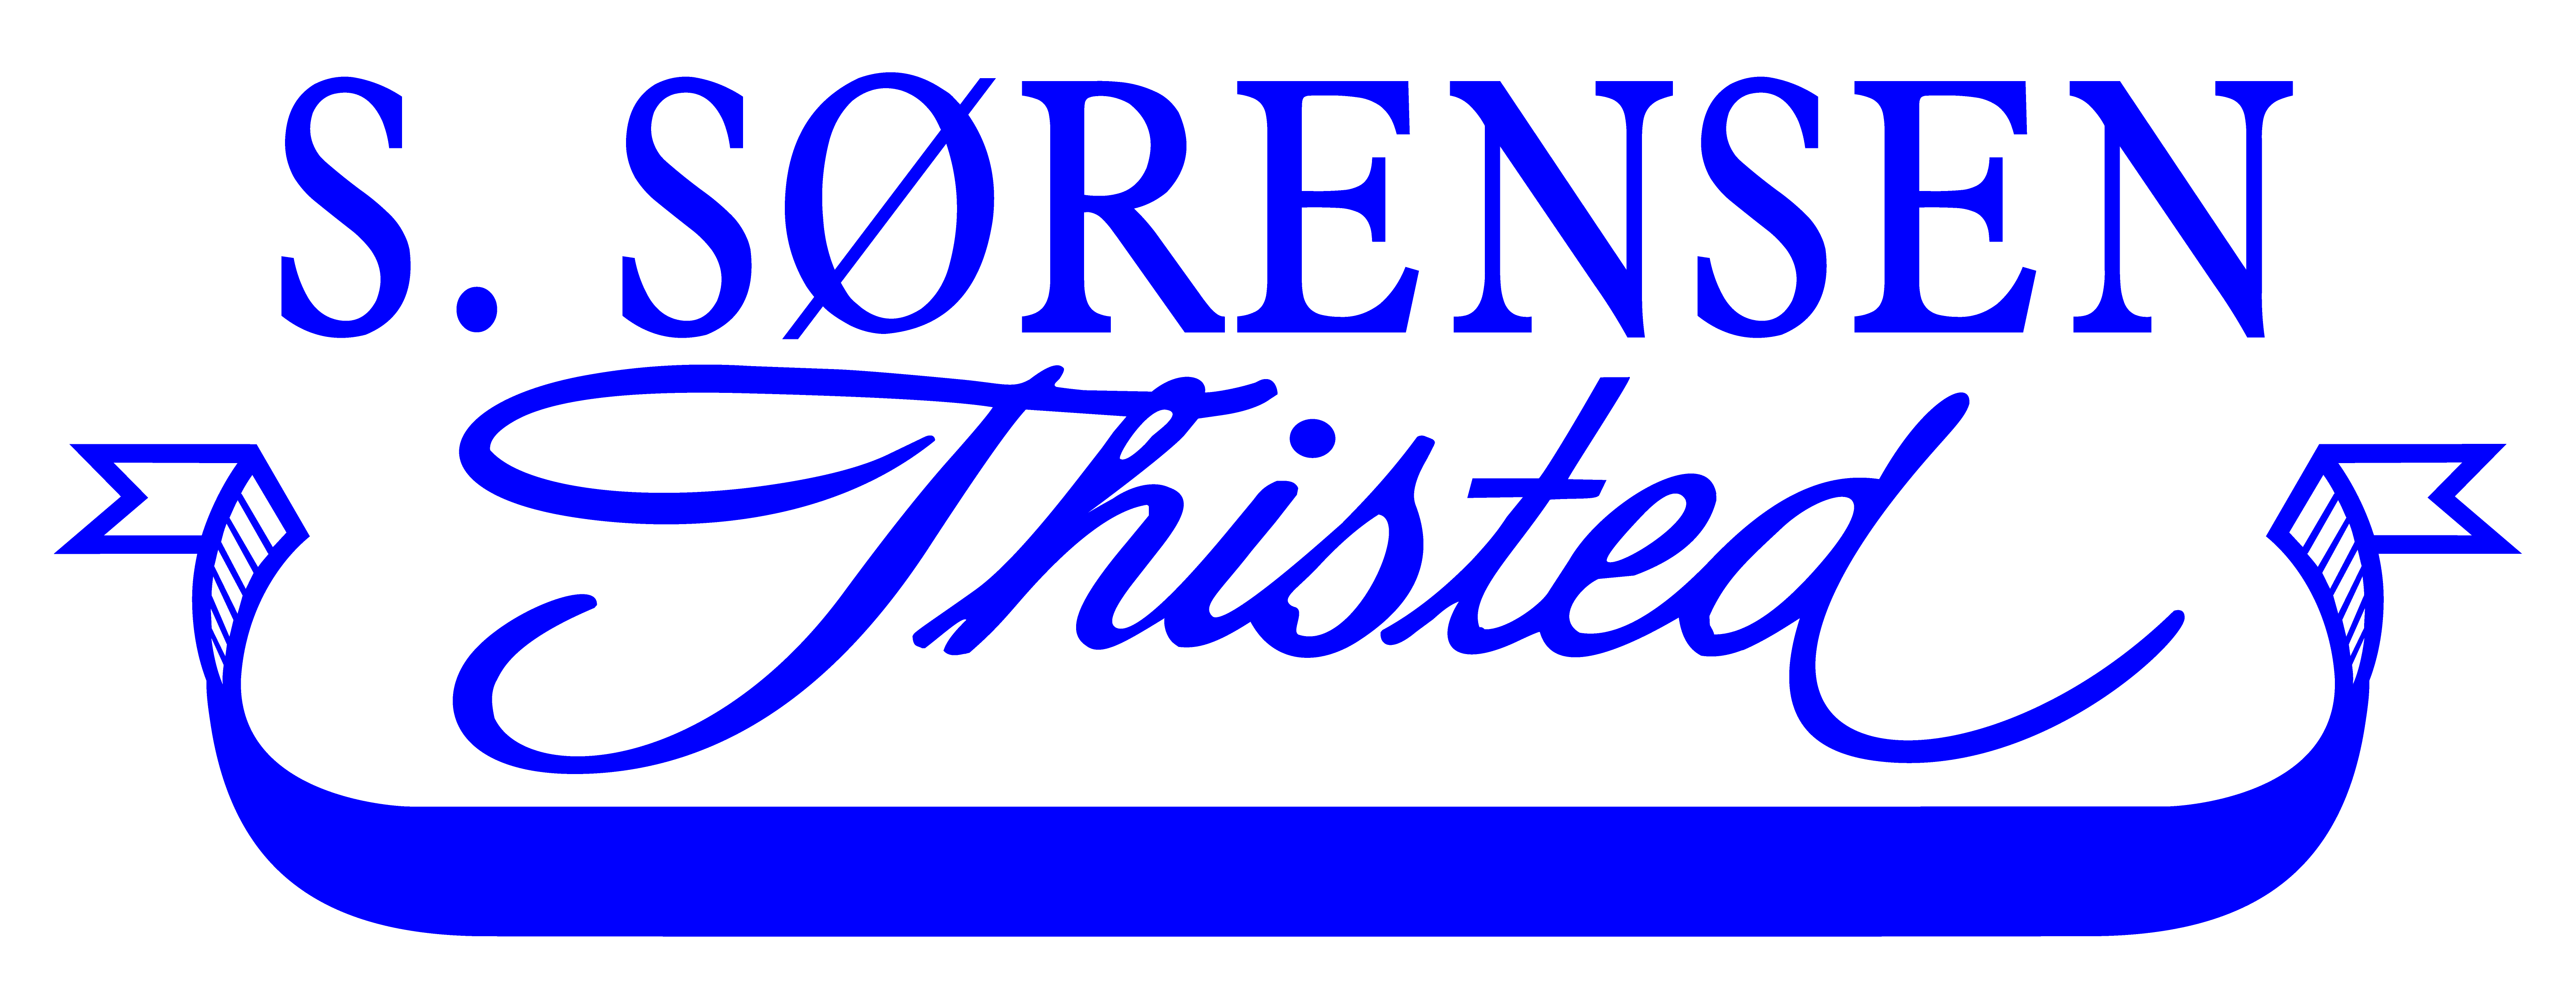 S. Sørensen logo